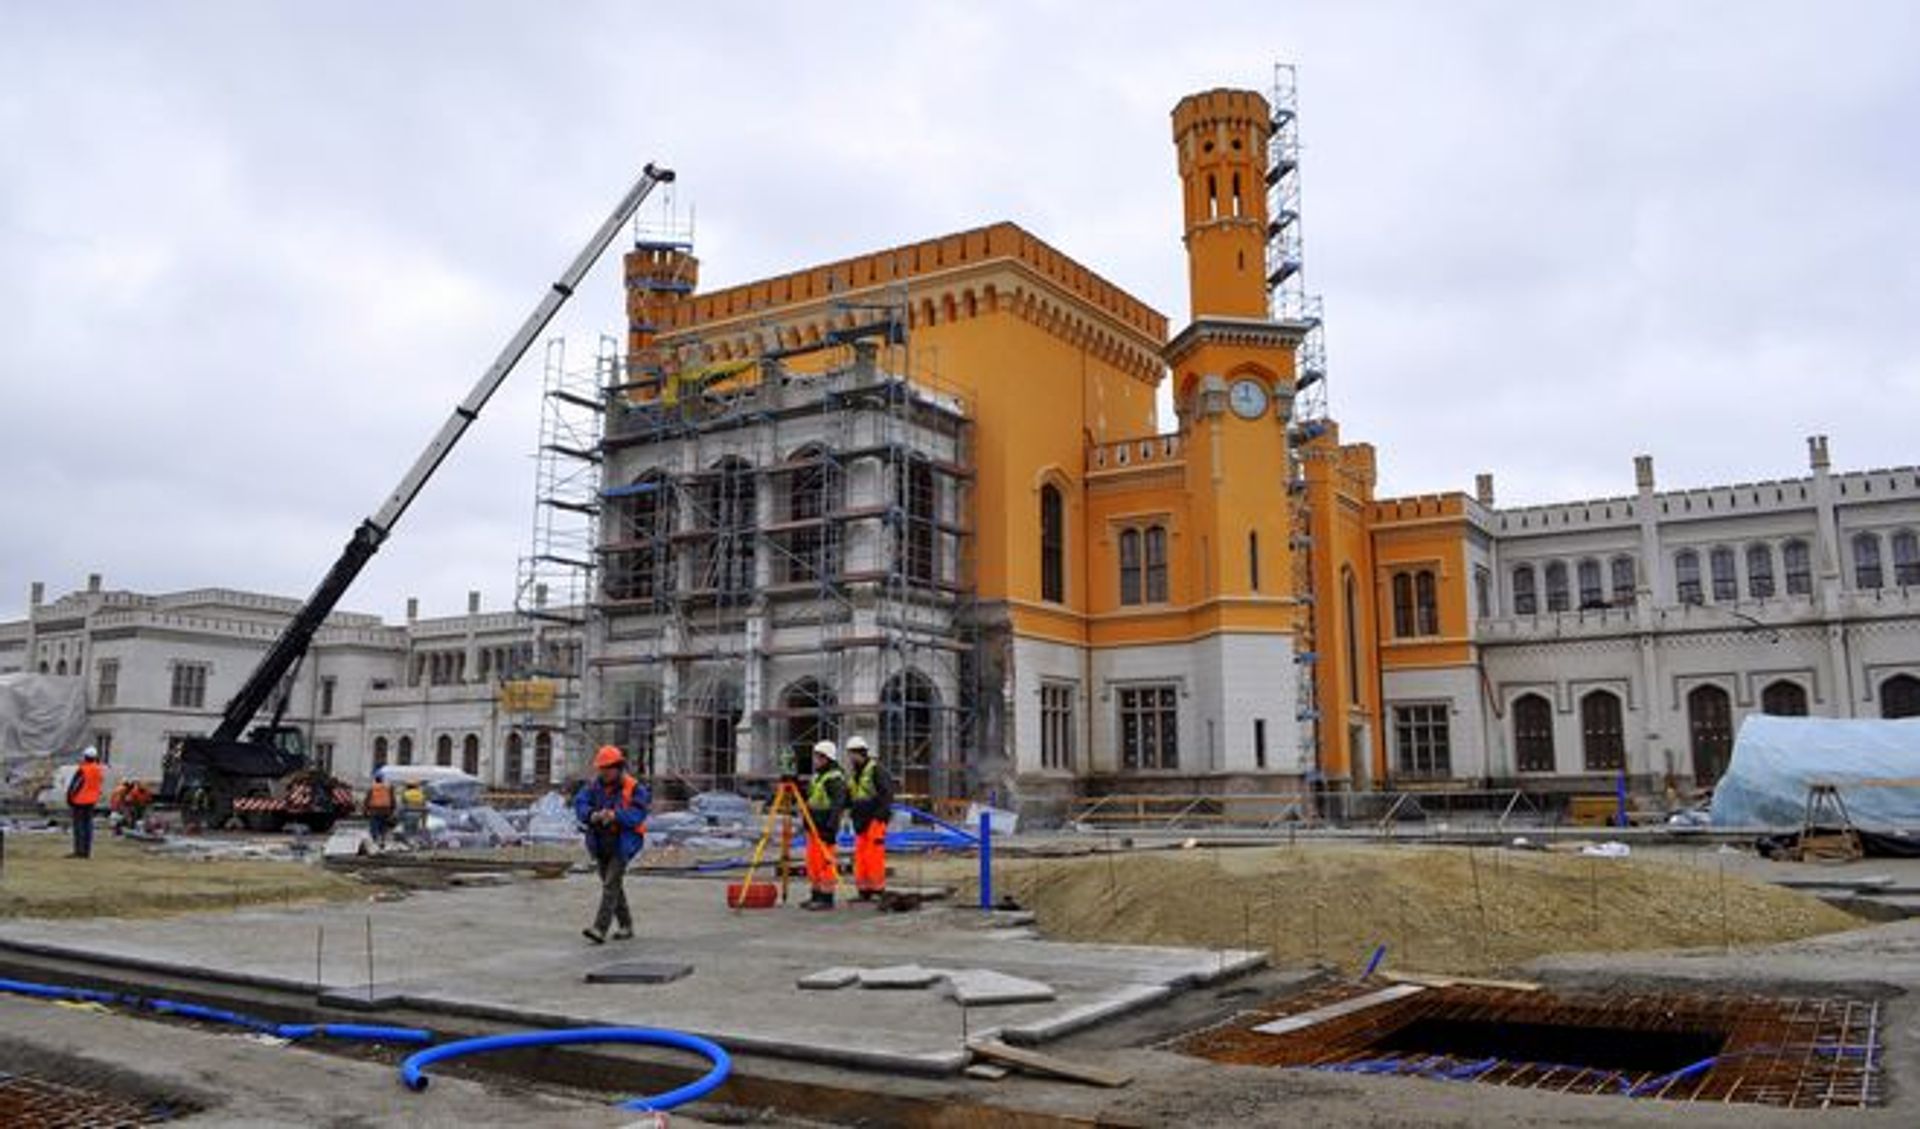  700 budowlańców pracuje przy modernizacji Dworca Głównego by zdążyć na Euro